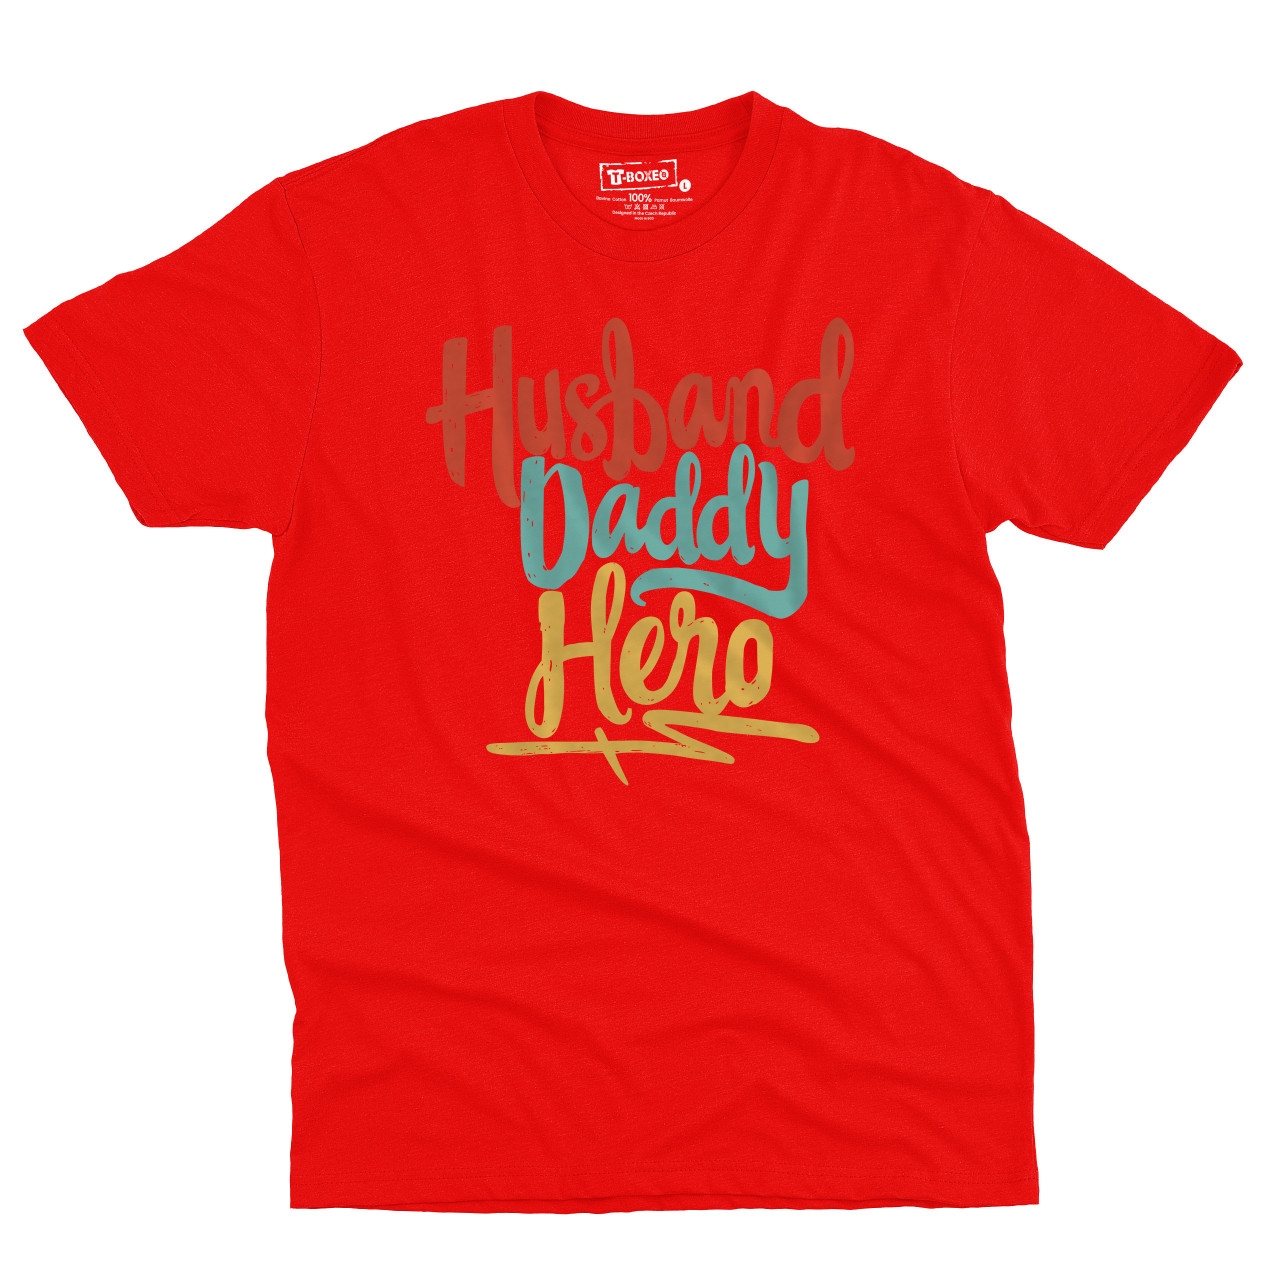 Pánské tričko s potiskem “Husband, Daddy, Hero”